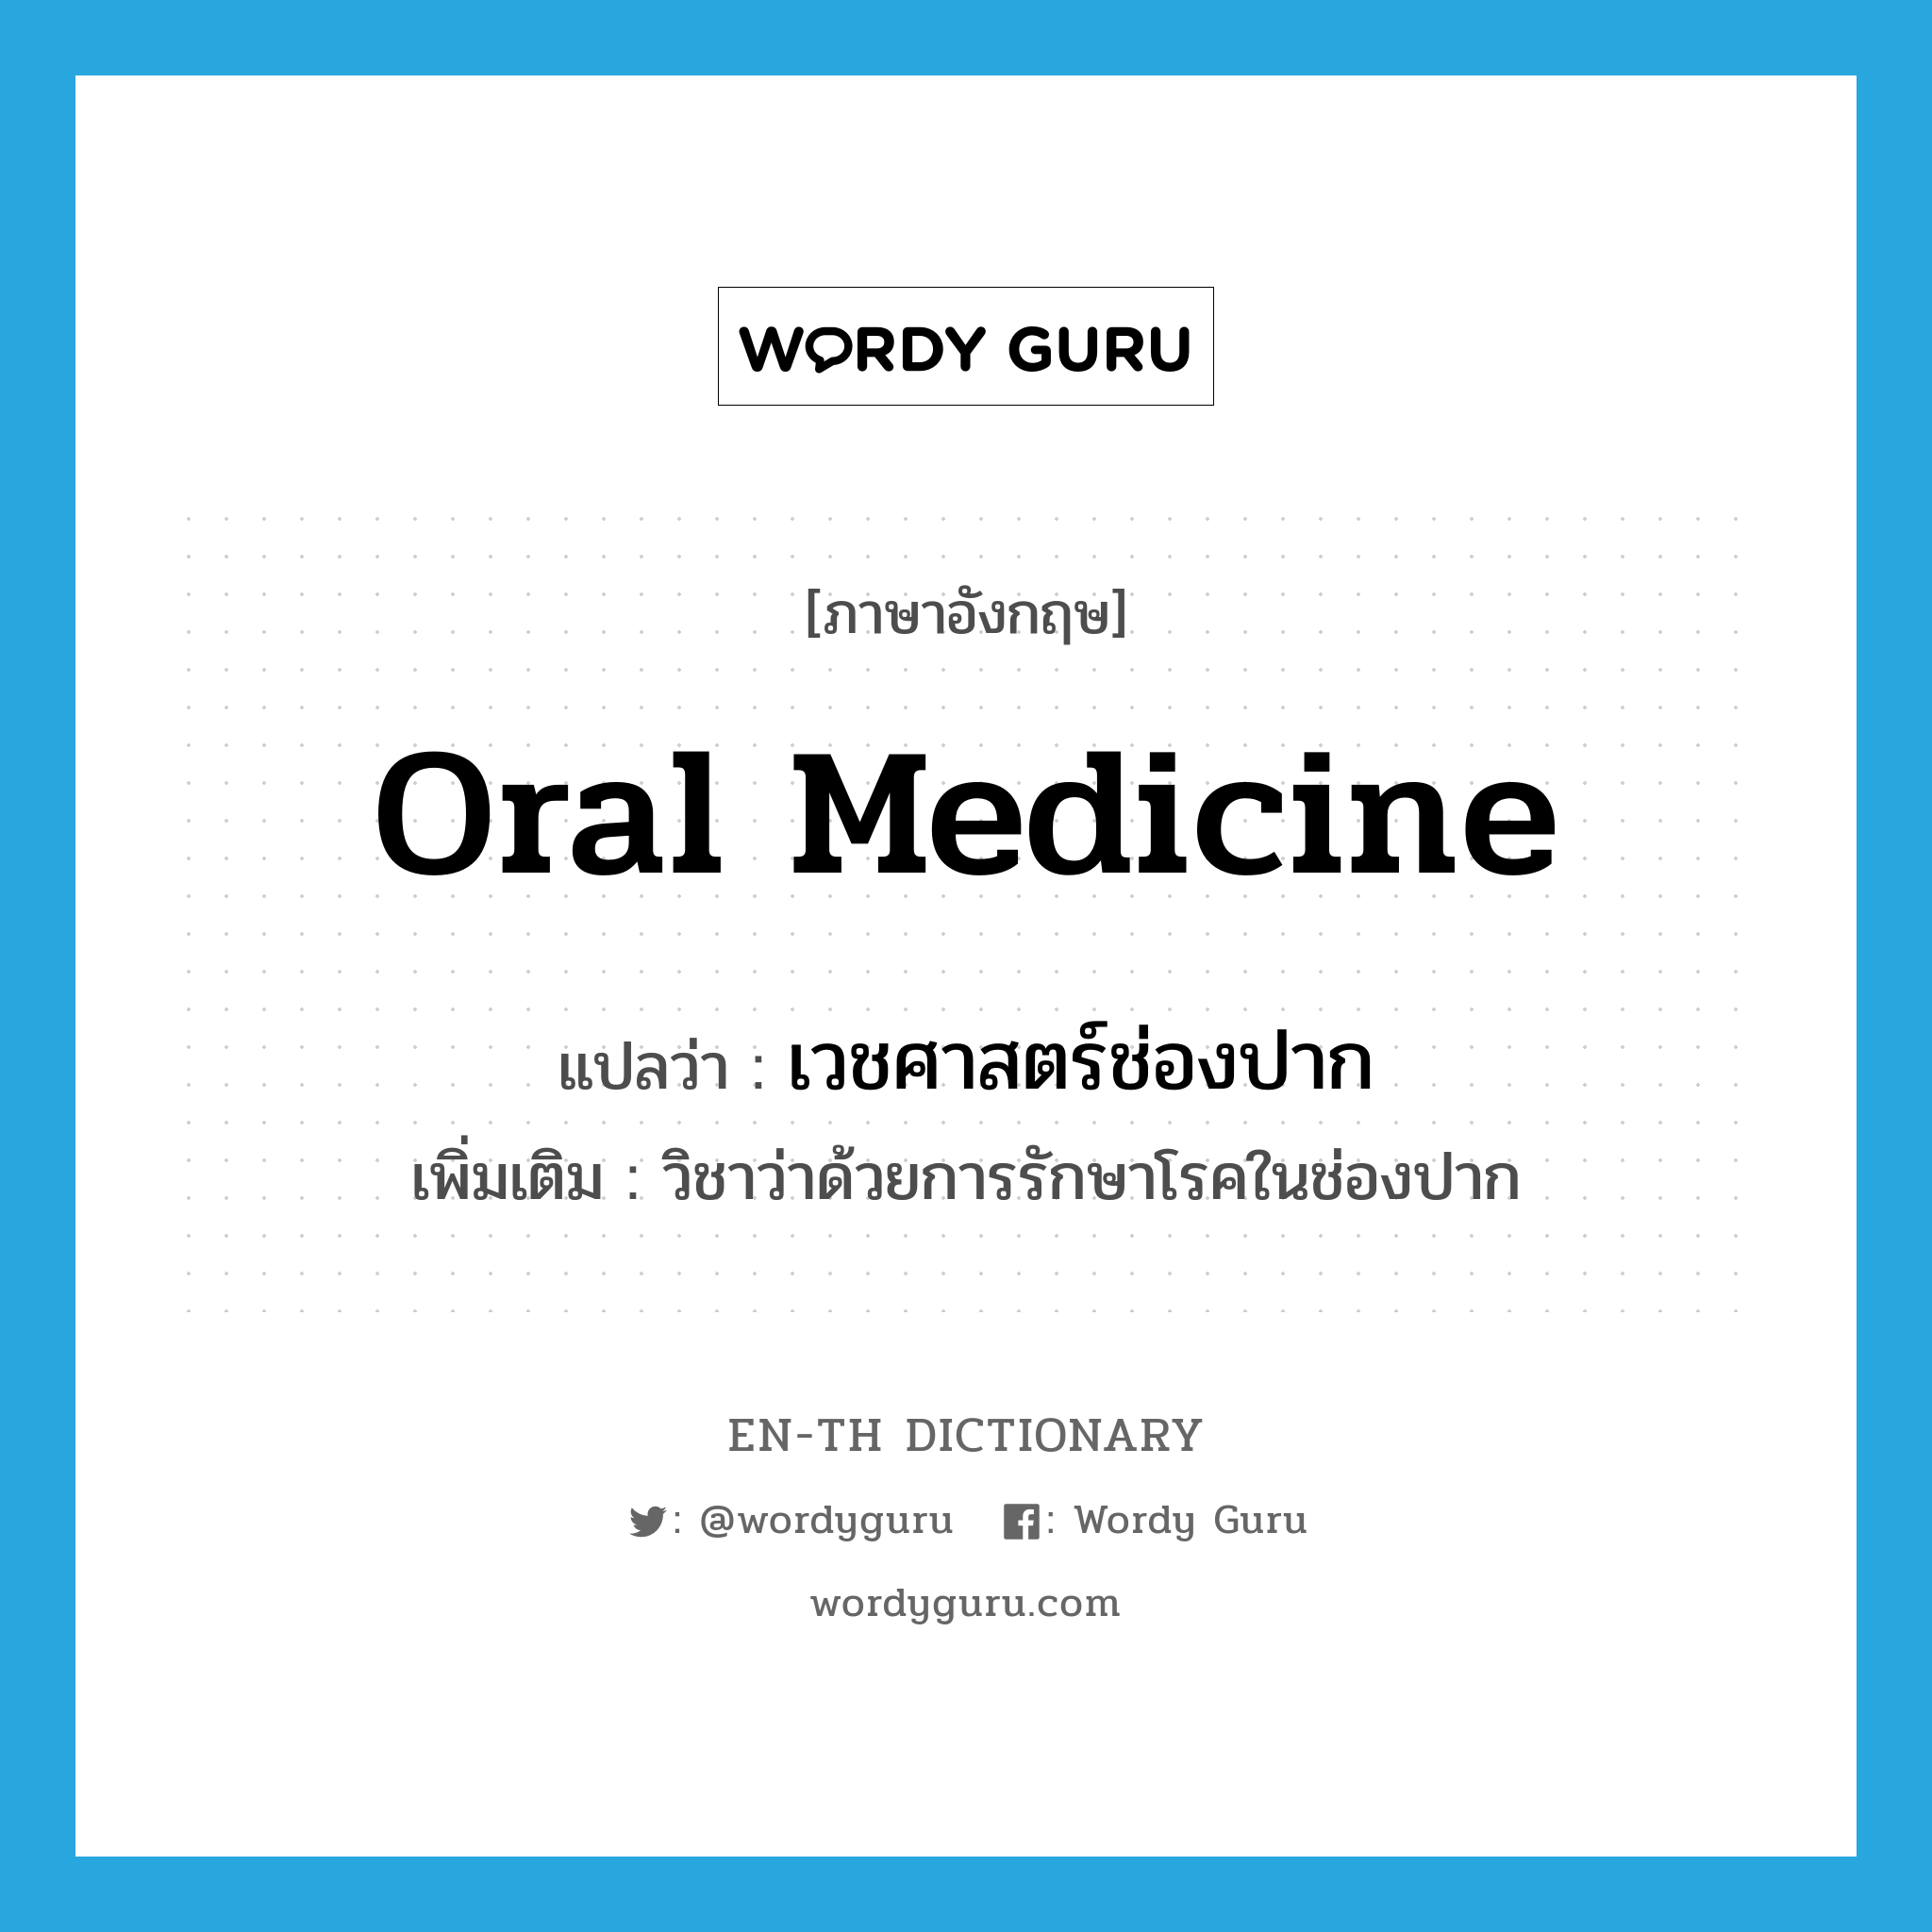 oral medicine แปลว่า?, คำศัพท์ภาษาอังกฤษ oral medicine แปลว่า เวชศาสตร์ช่องปาก ประเภท N เพิ่มเติม วิชาว่าด้วยการรักษาโรคในช่องปาก หมวด N